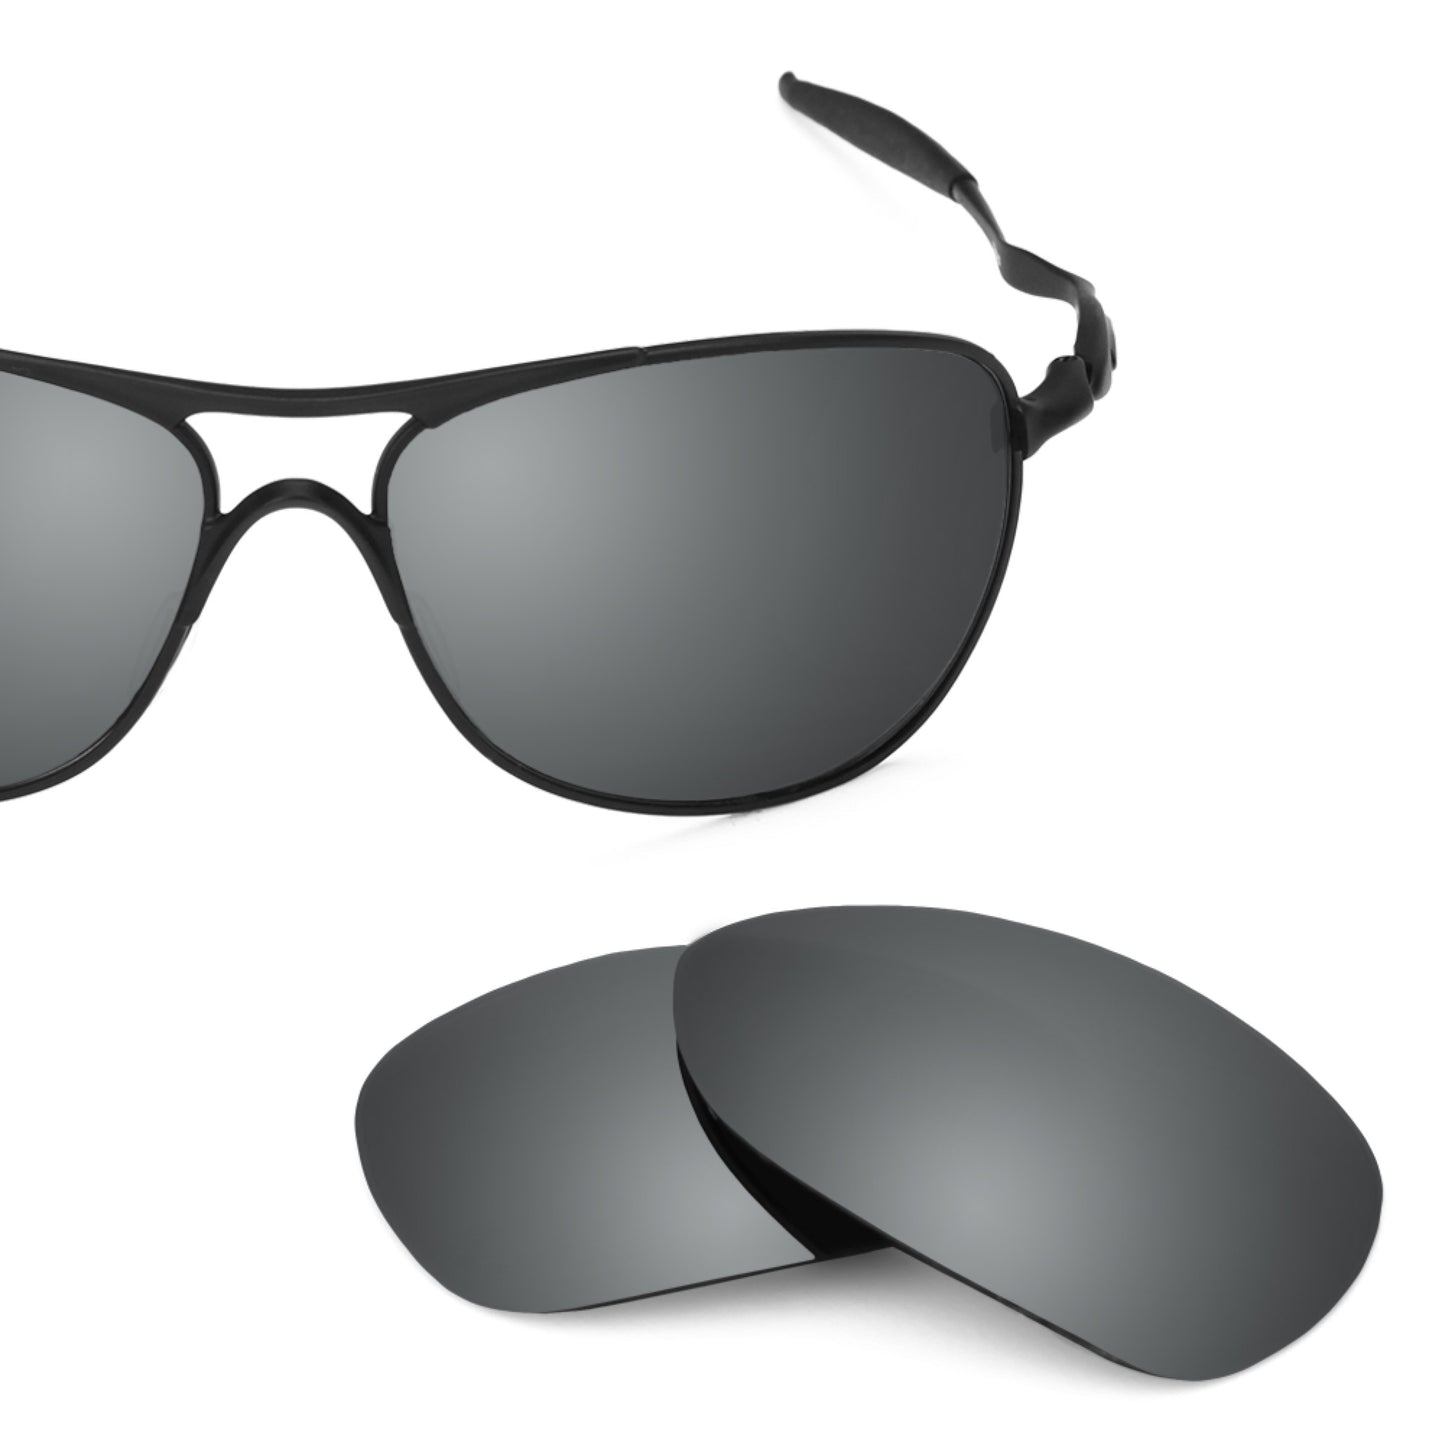 Revant replacement lenses for Oakley Crosshair (2012) Non-Polarized Black Chrome